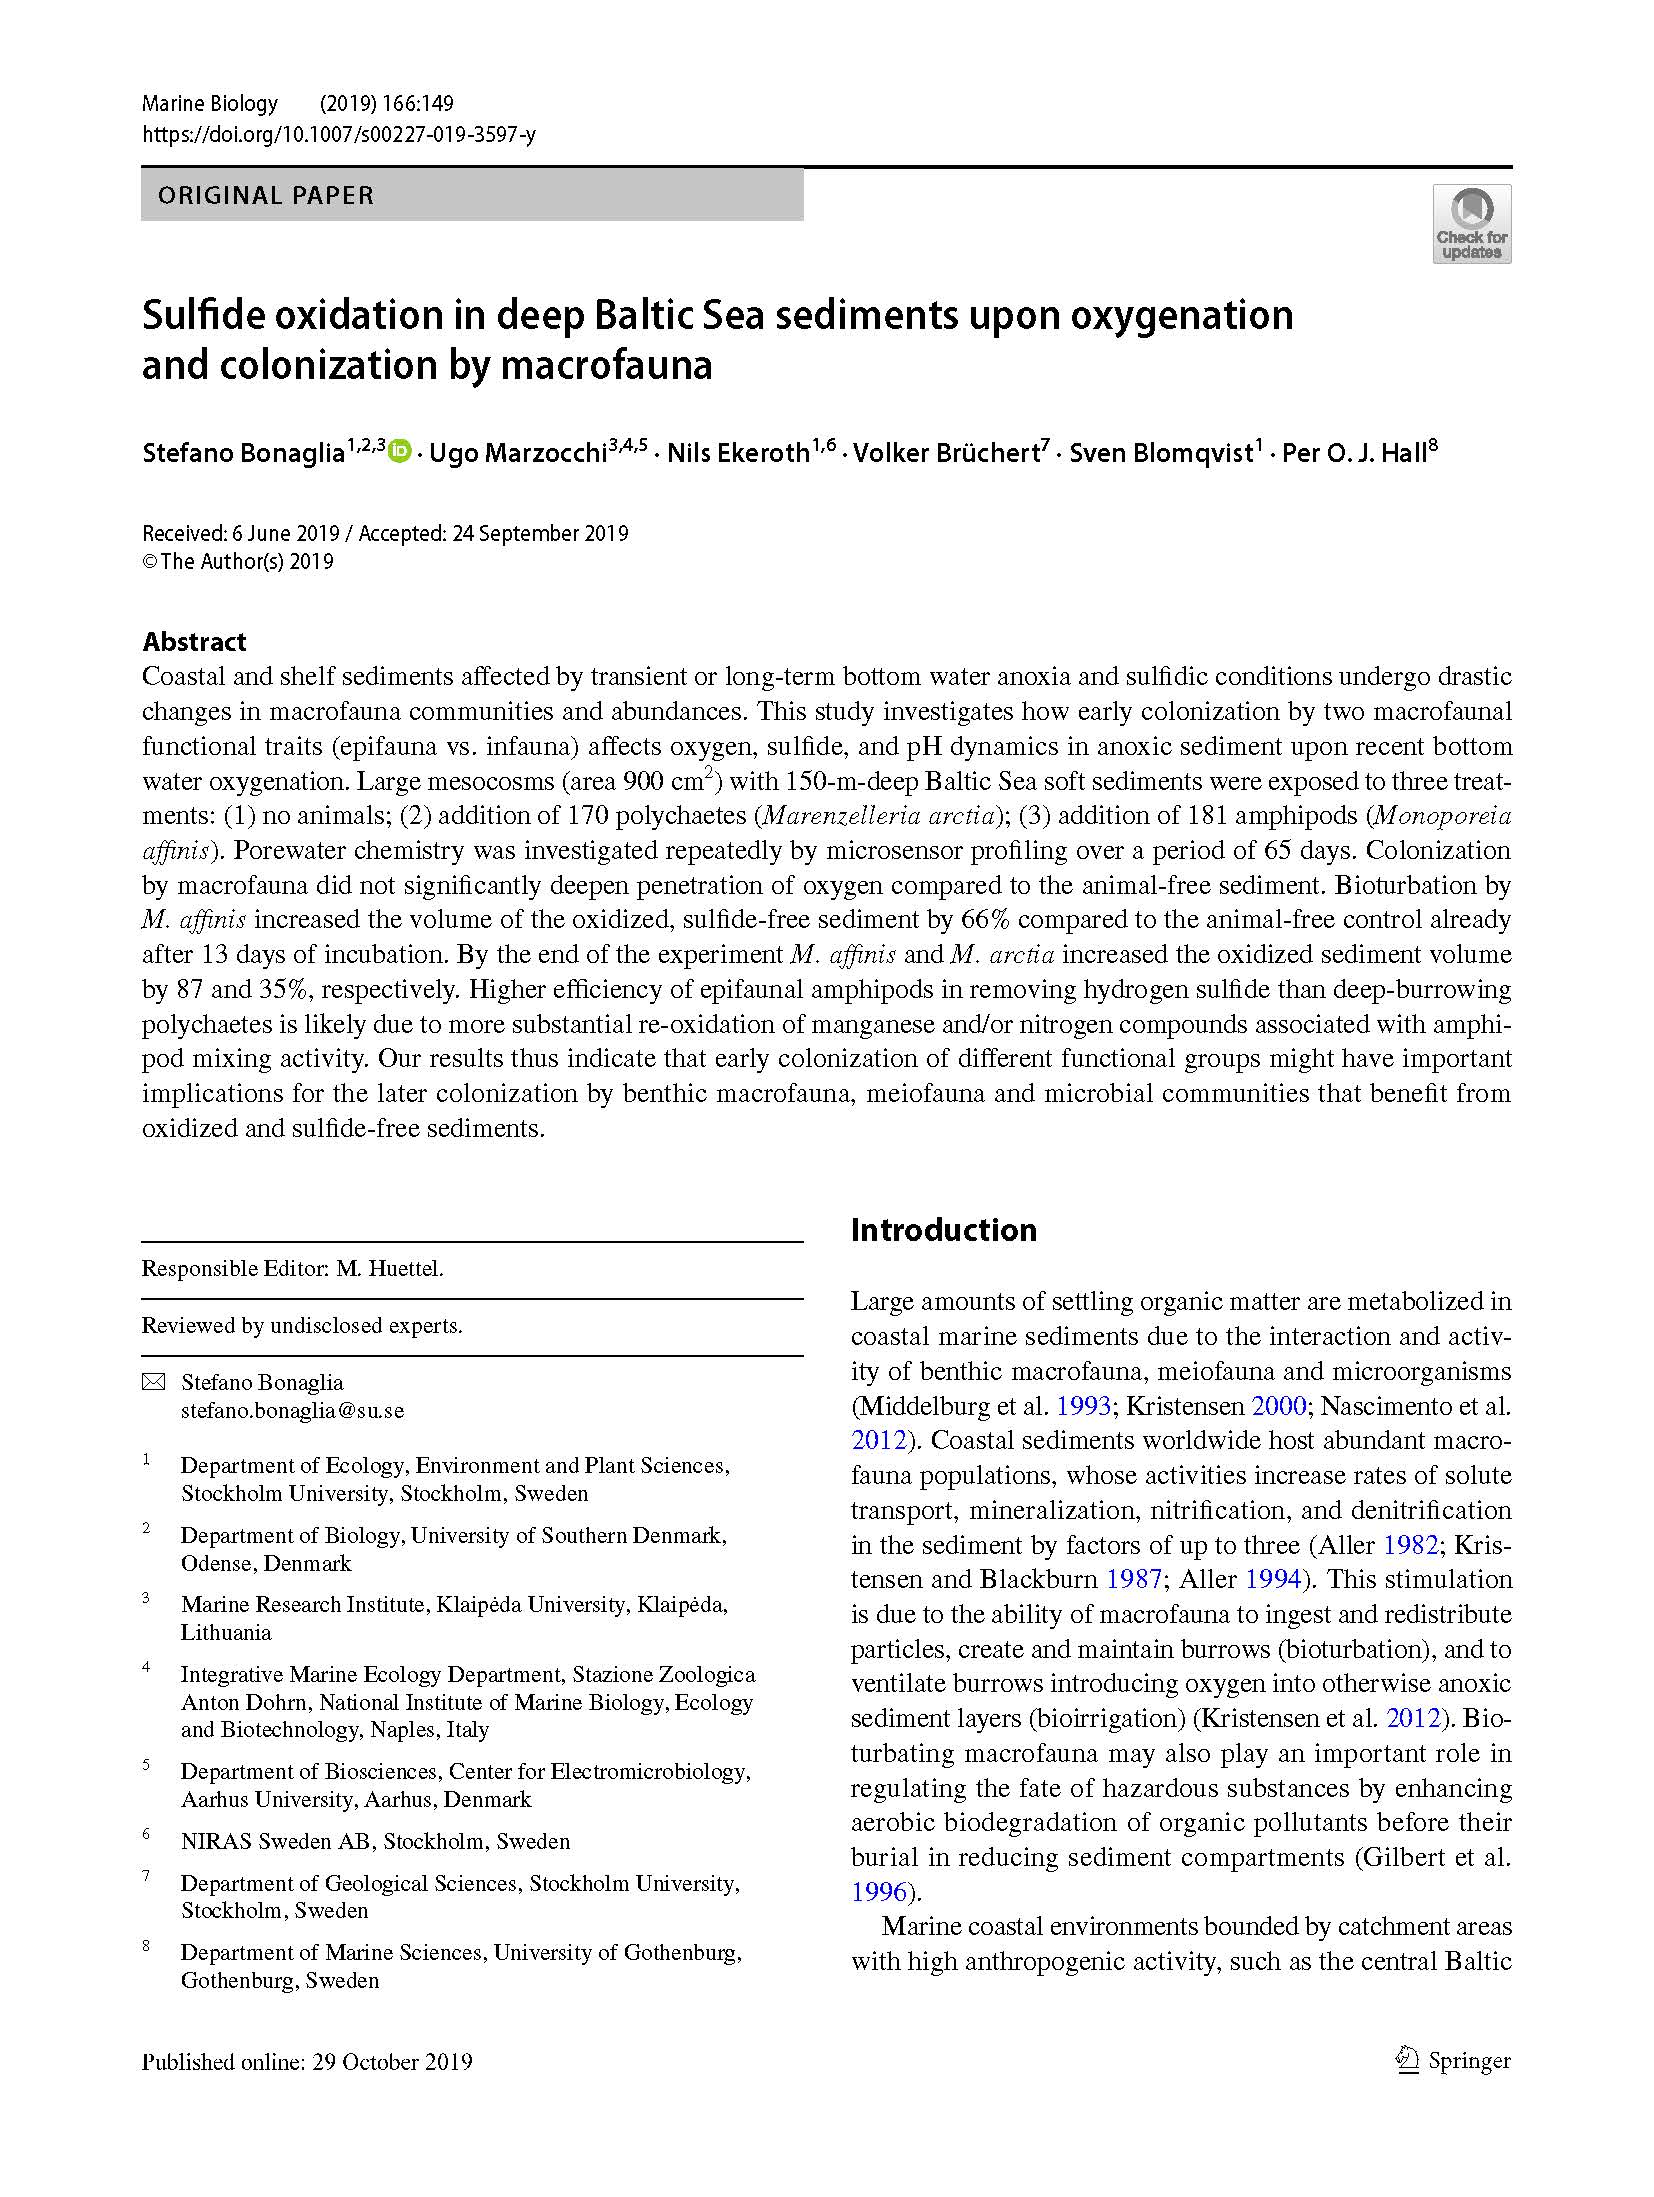 Bonaglia2019 Article SulfideOxidationInDeepBalticSe 2